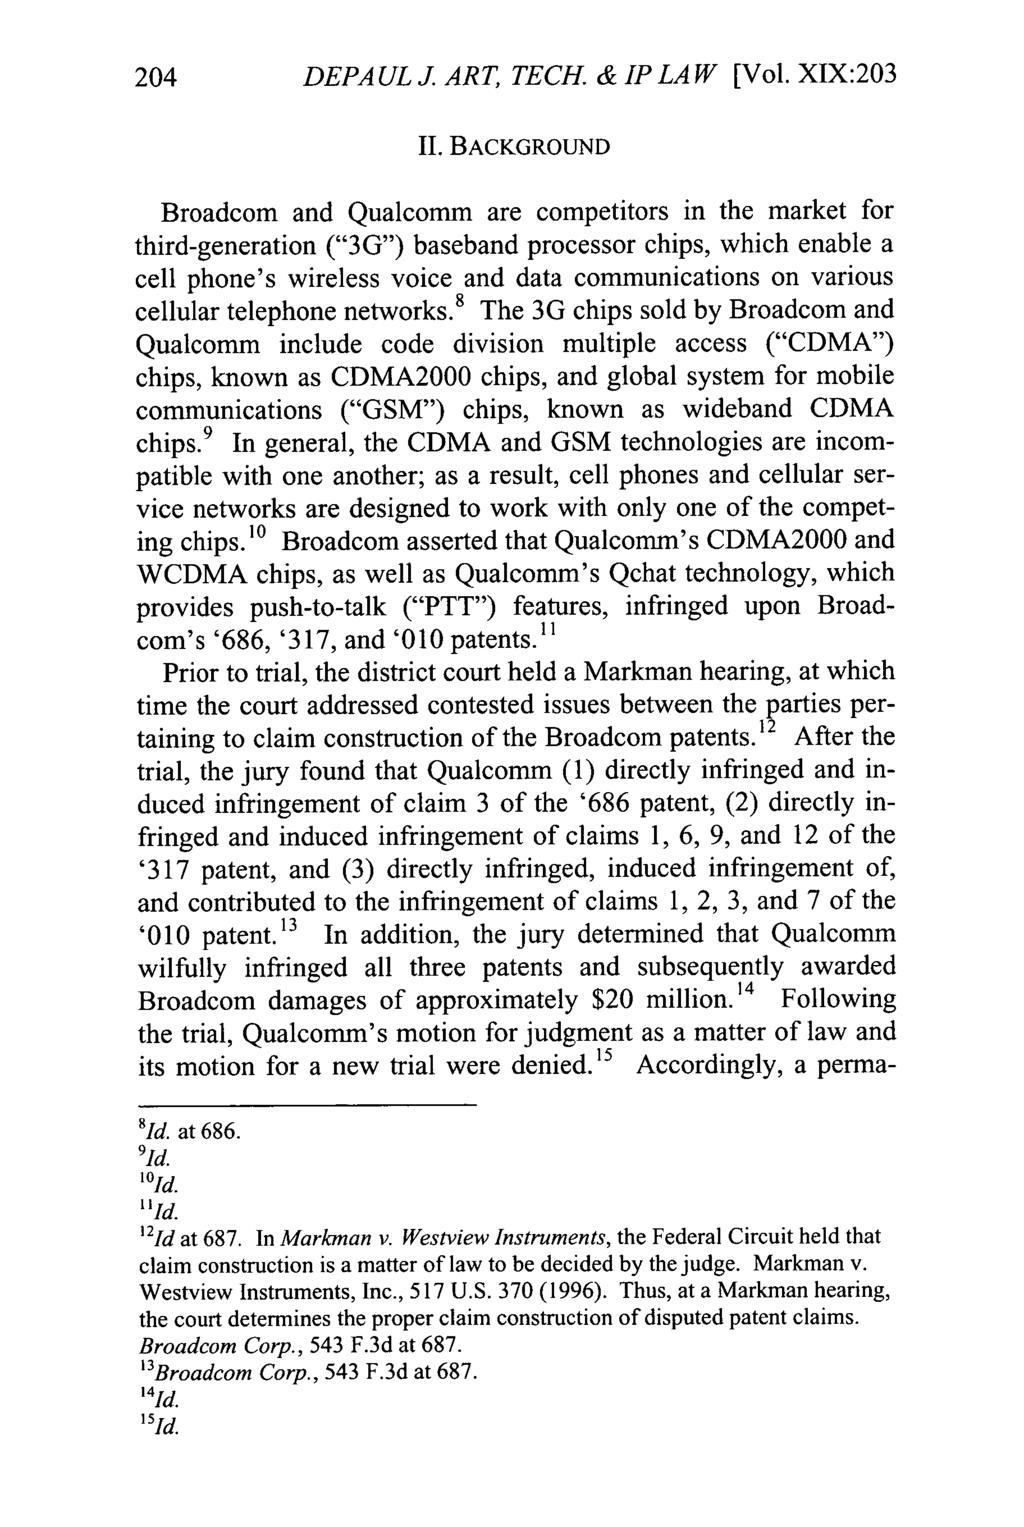 DePaul Journal of Art, Technology & Intellectual Property Law, Vol. 19, Iss. 1 [], Art. 9 204 DEPA UL J ART, TECH. & IP LAW [Vol.